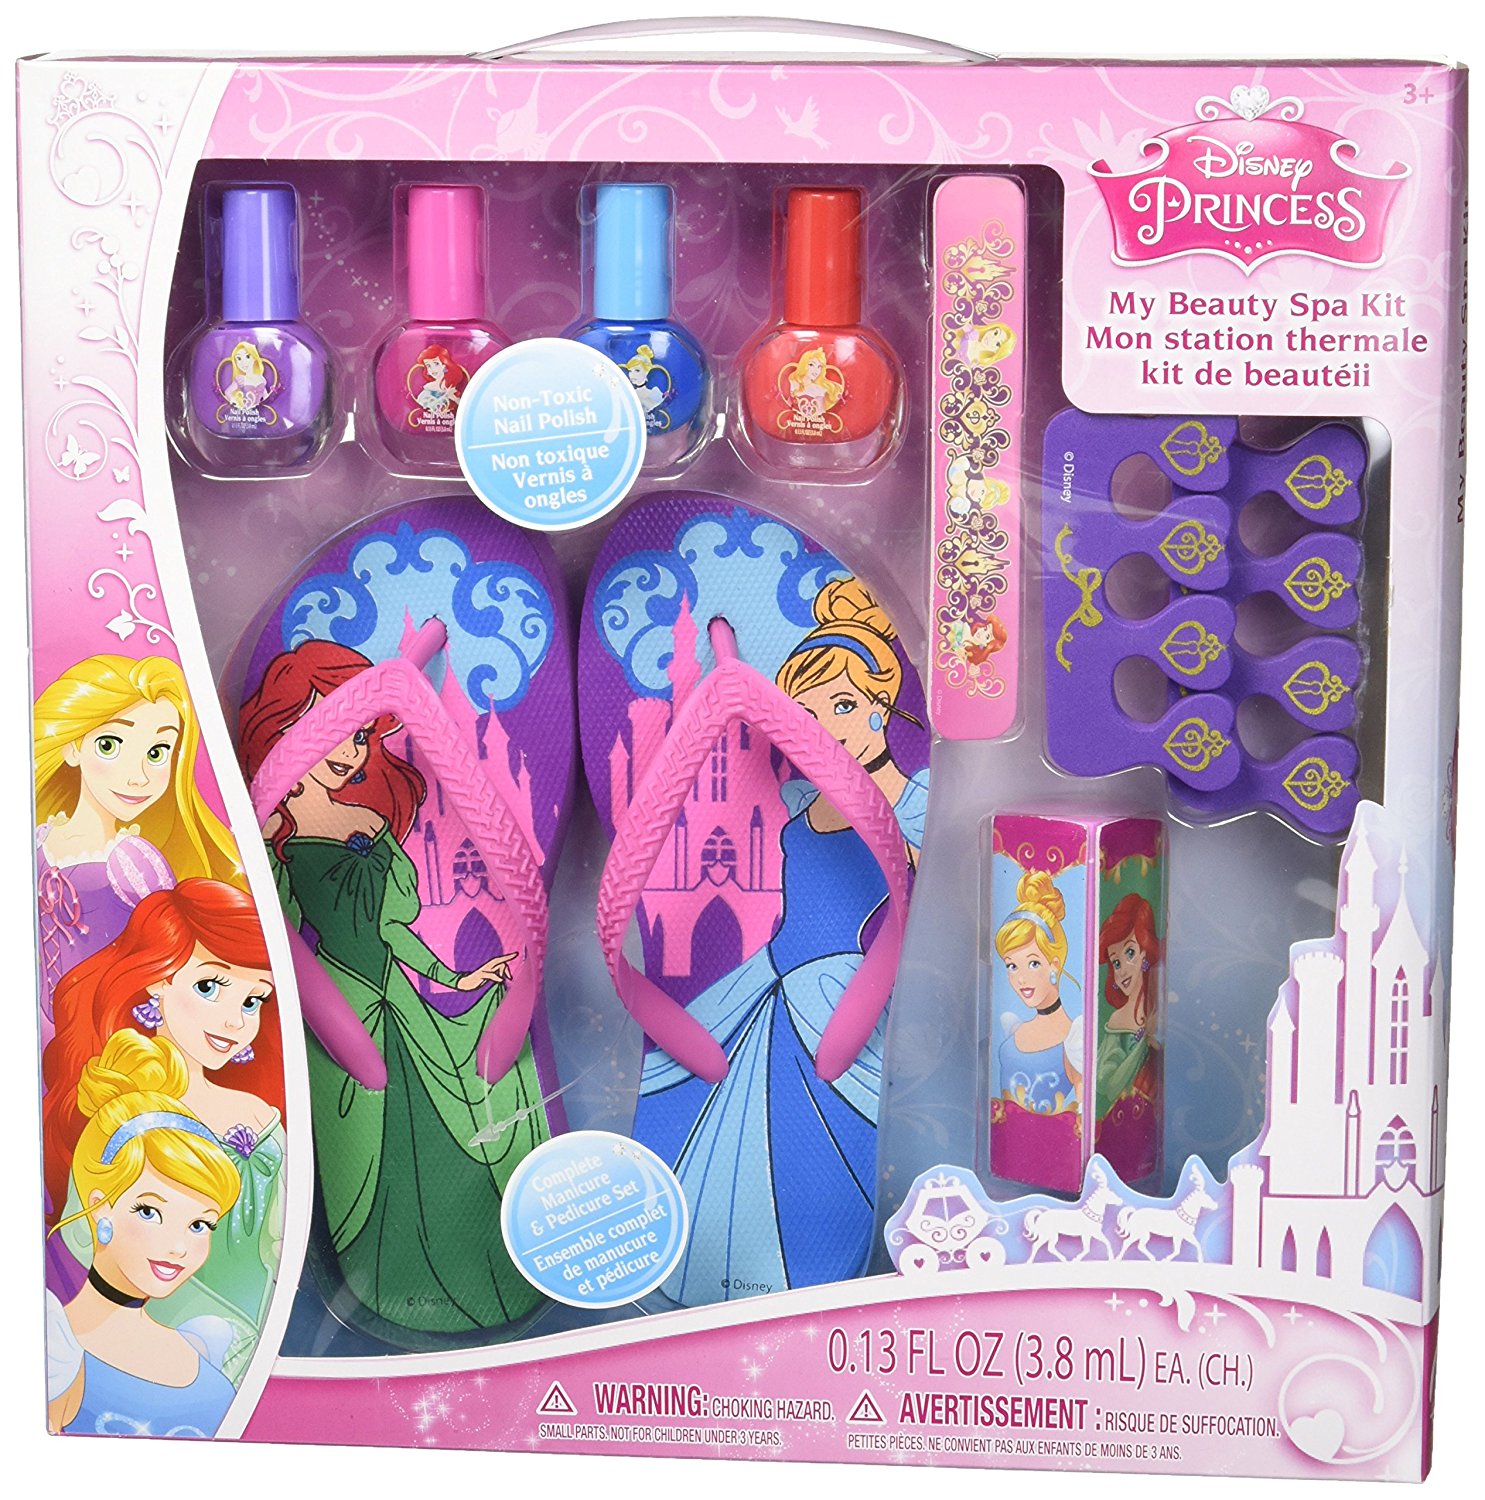 Disney Princess My Beauty Spa Kit Only $6.00! (Reg $11.00)